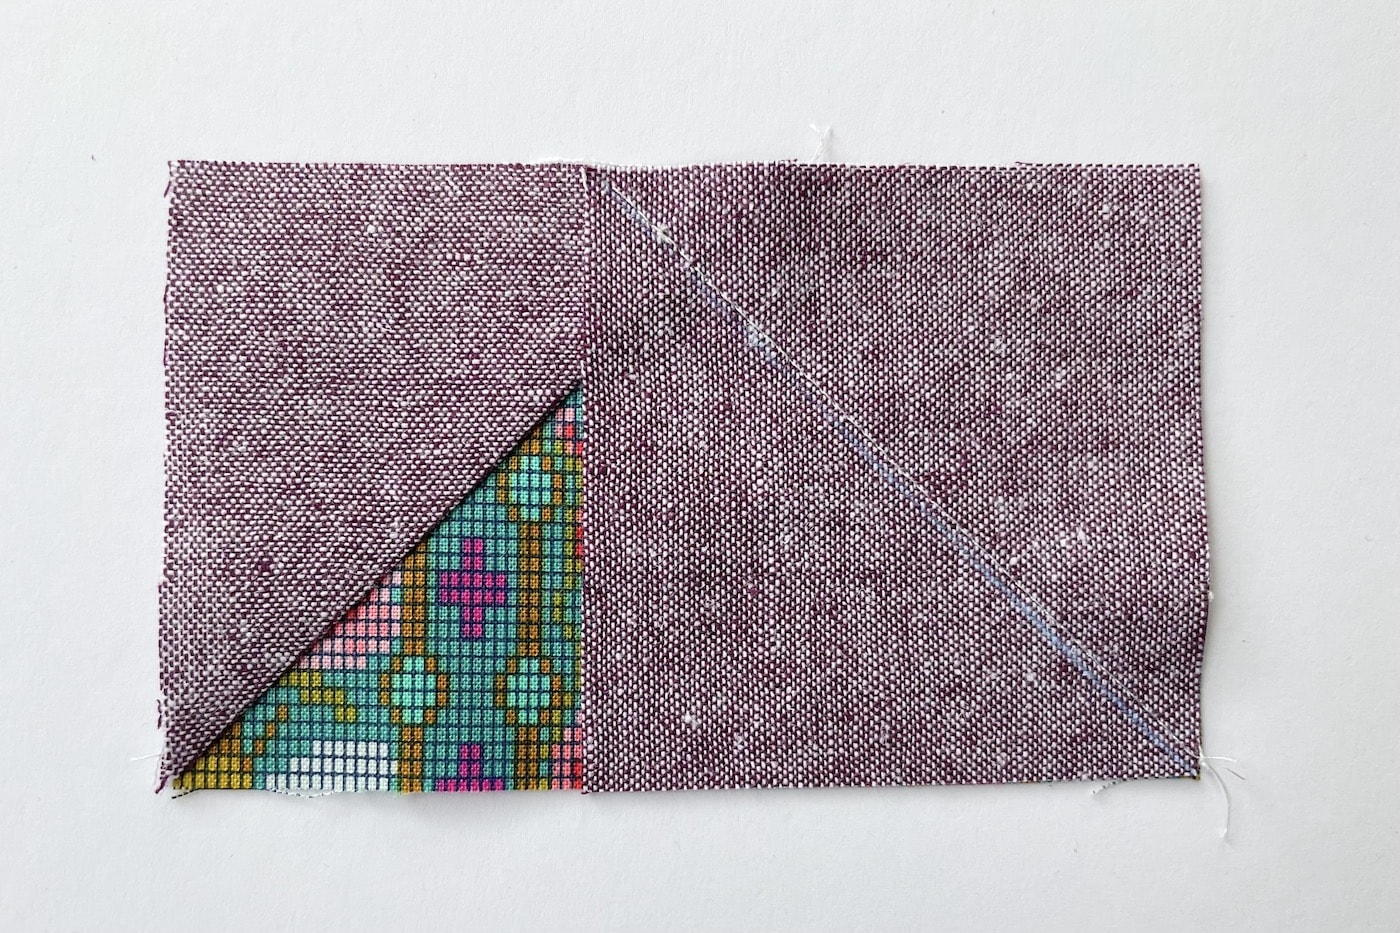 tissu violet et vert sur table blanche découpé en carrés et triangles